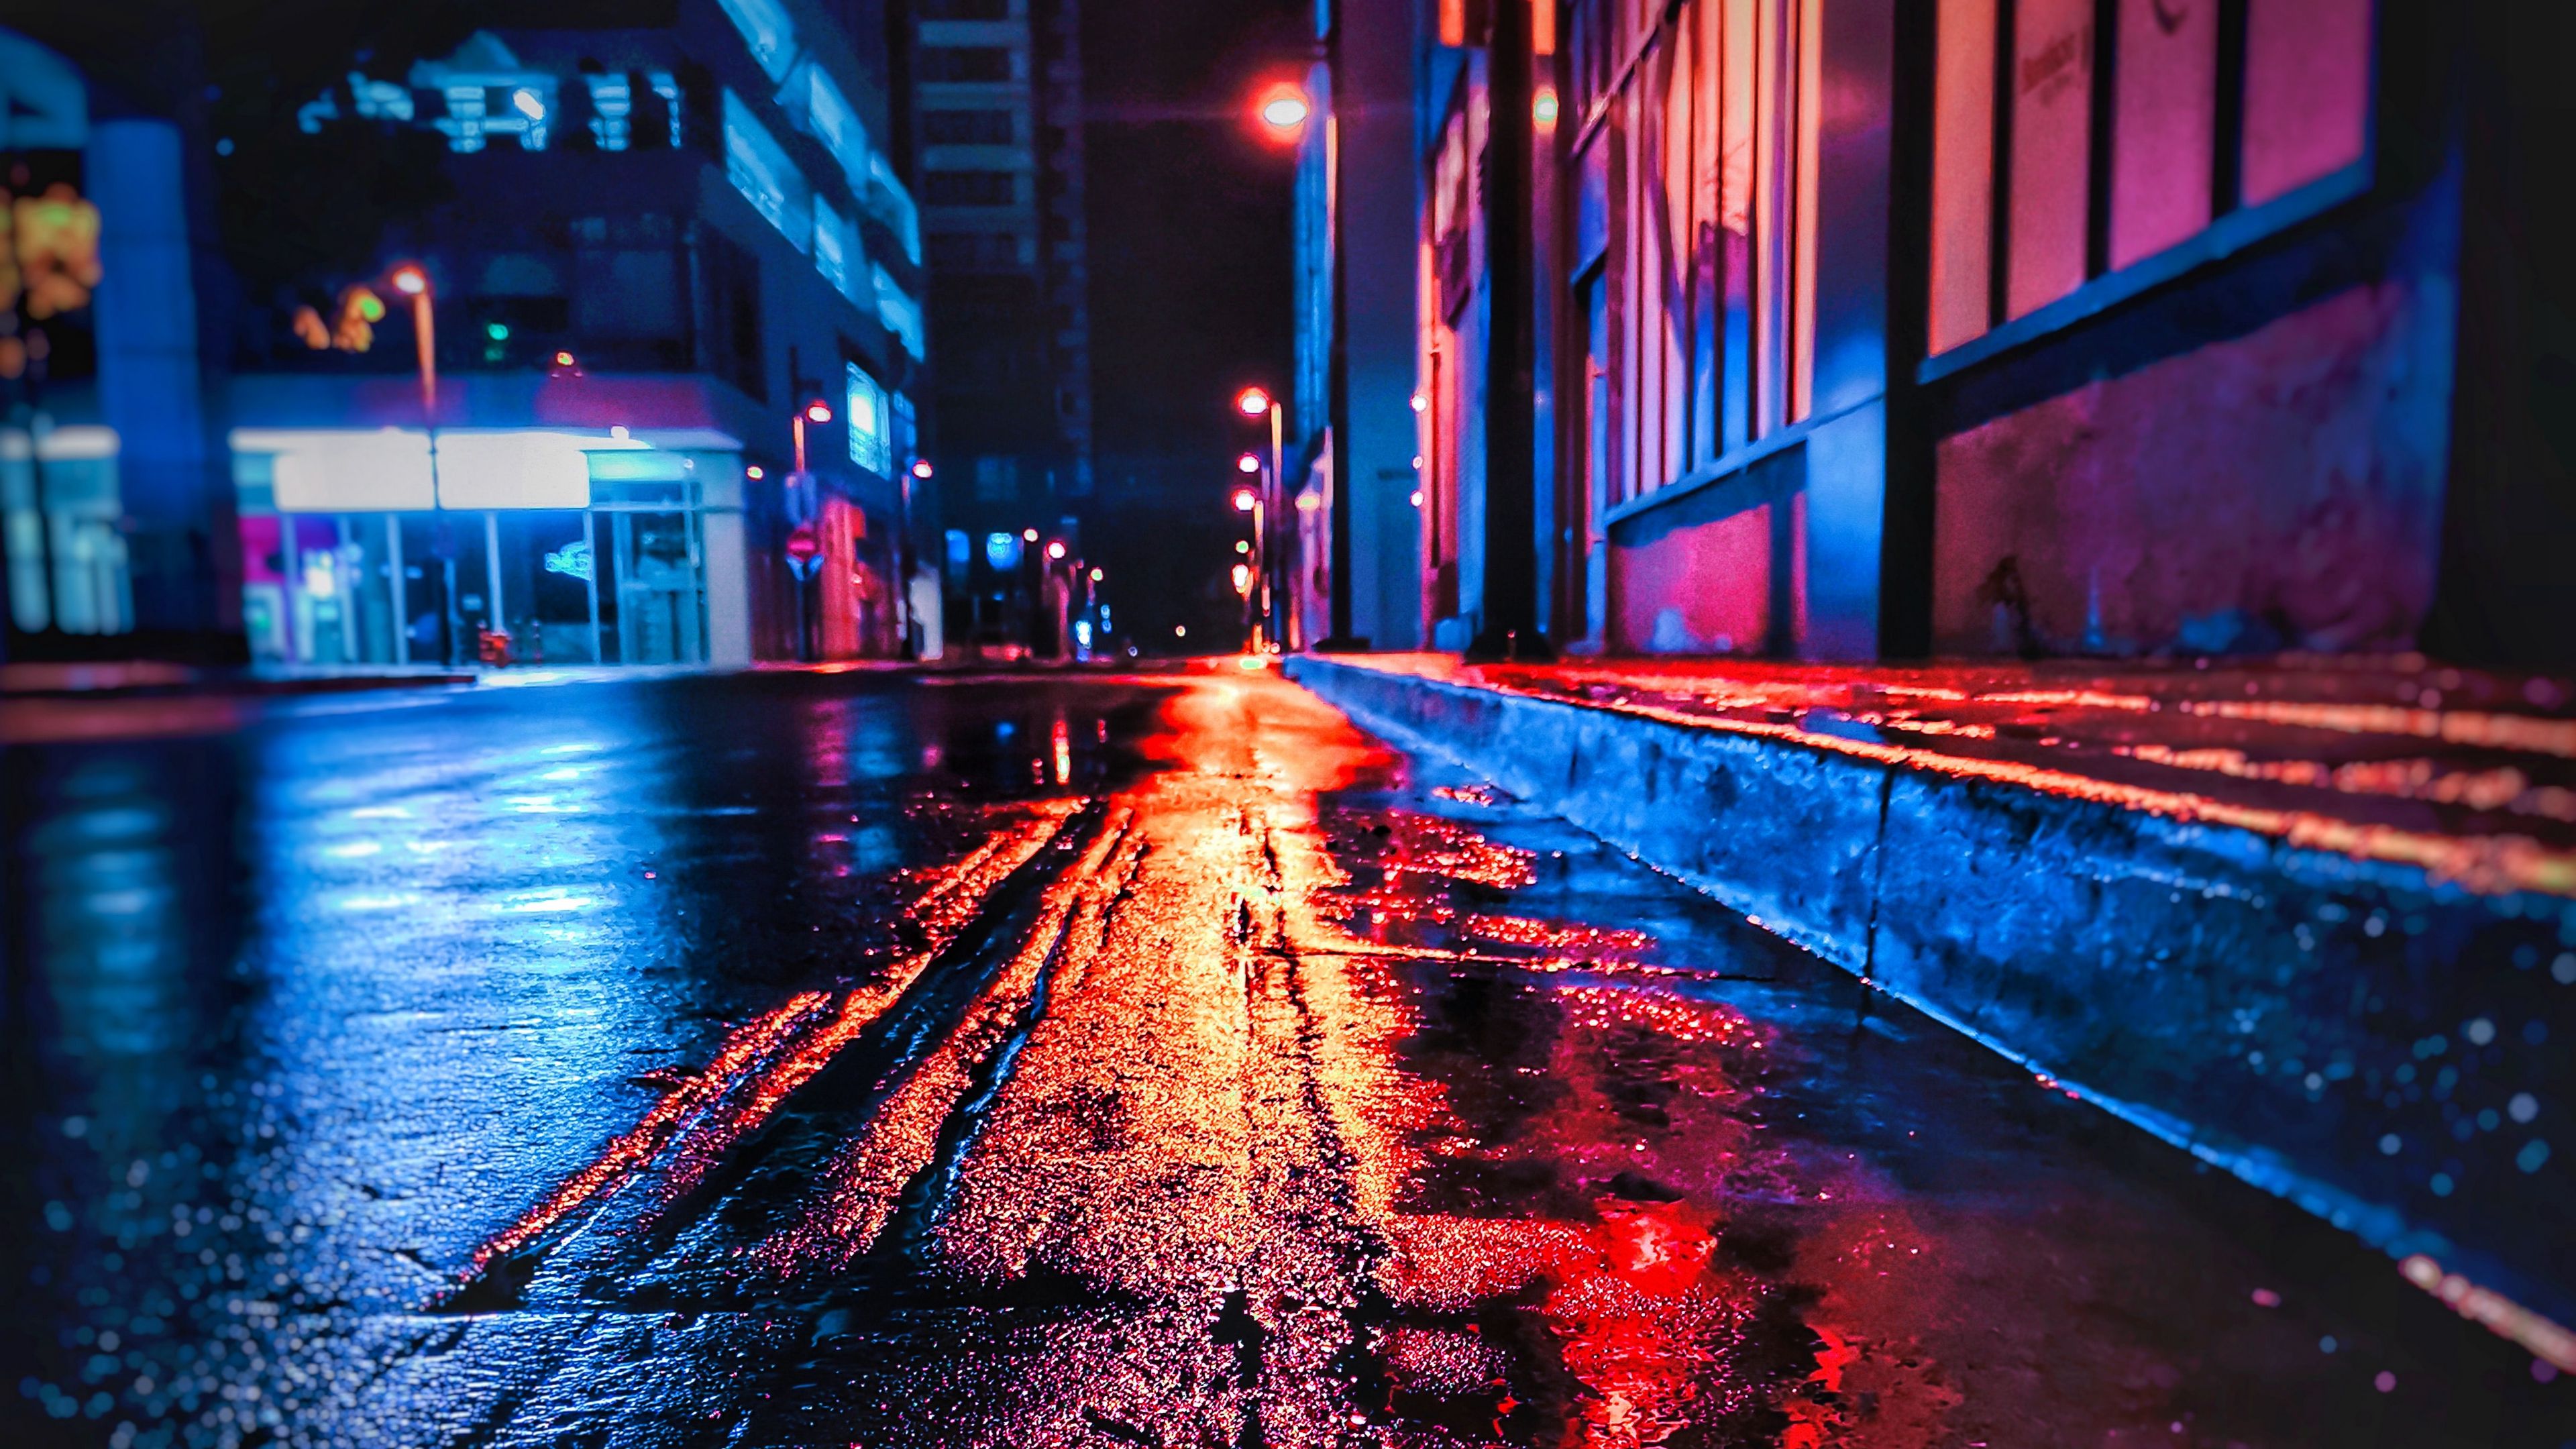 street at night wallpaper hd